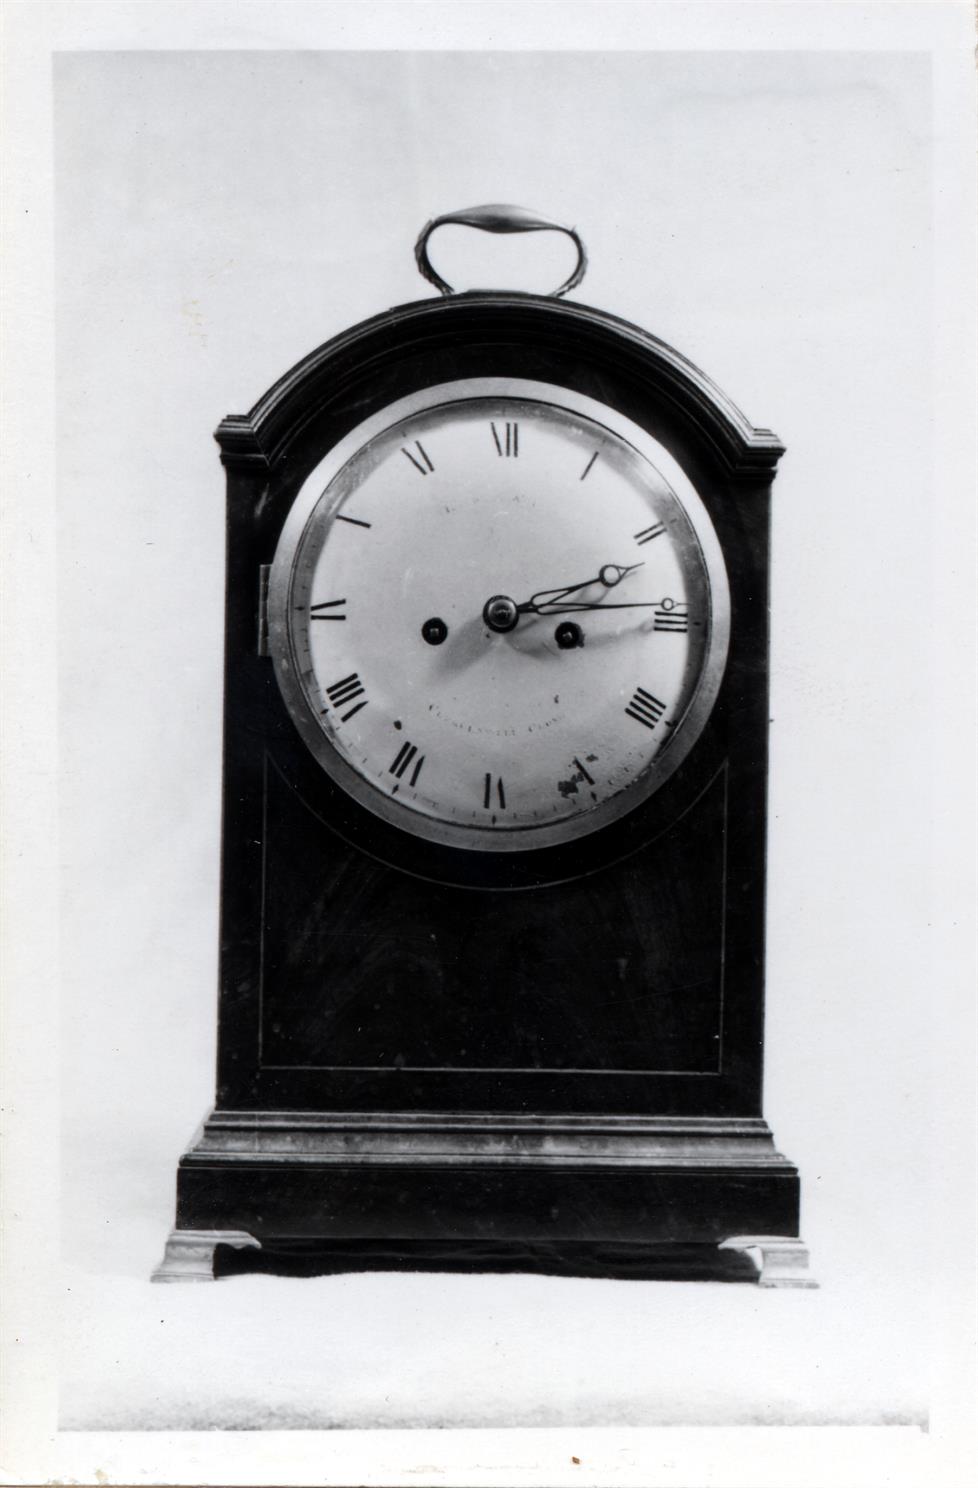 Exposição de relógios do século XVI ao XIX : relógios de caixa